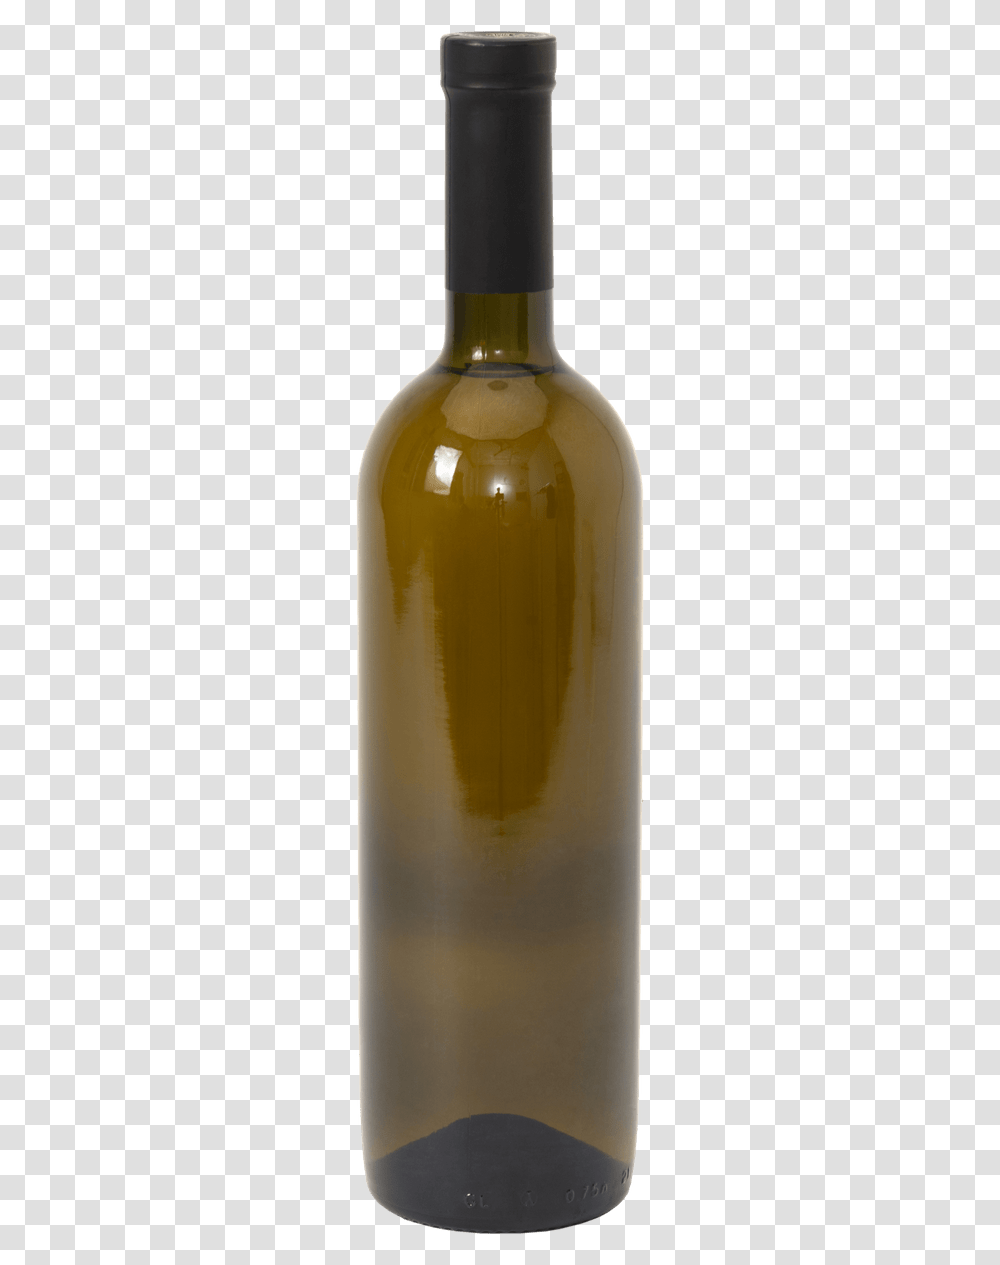 Empty Wine Bottle Glass Bottle, Beverage, Jar, Food, Alcohol Transparent Png